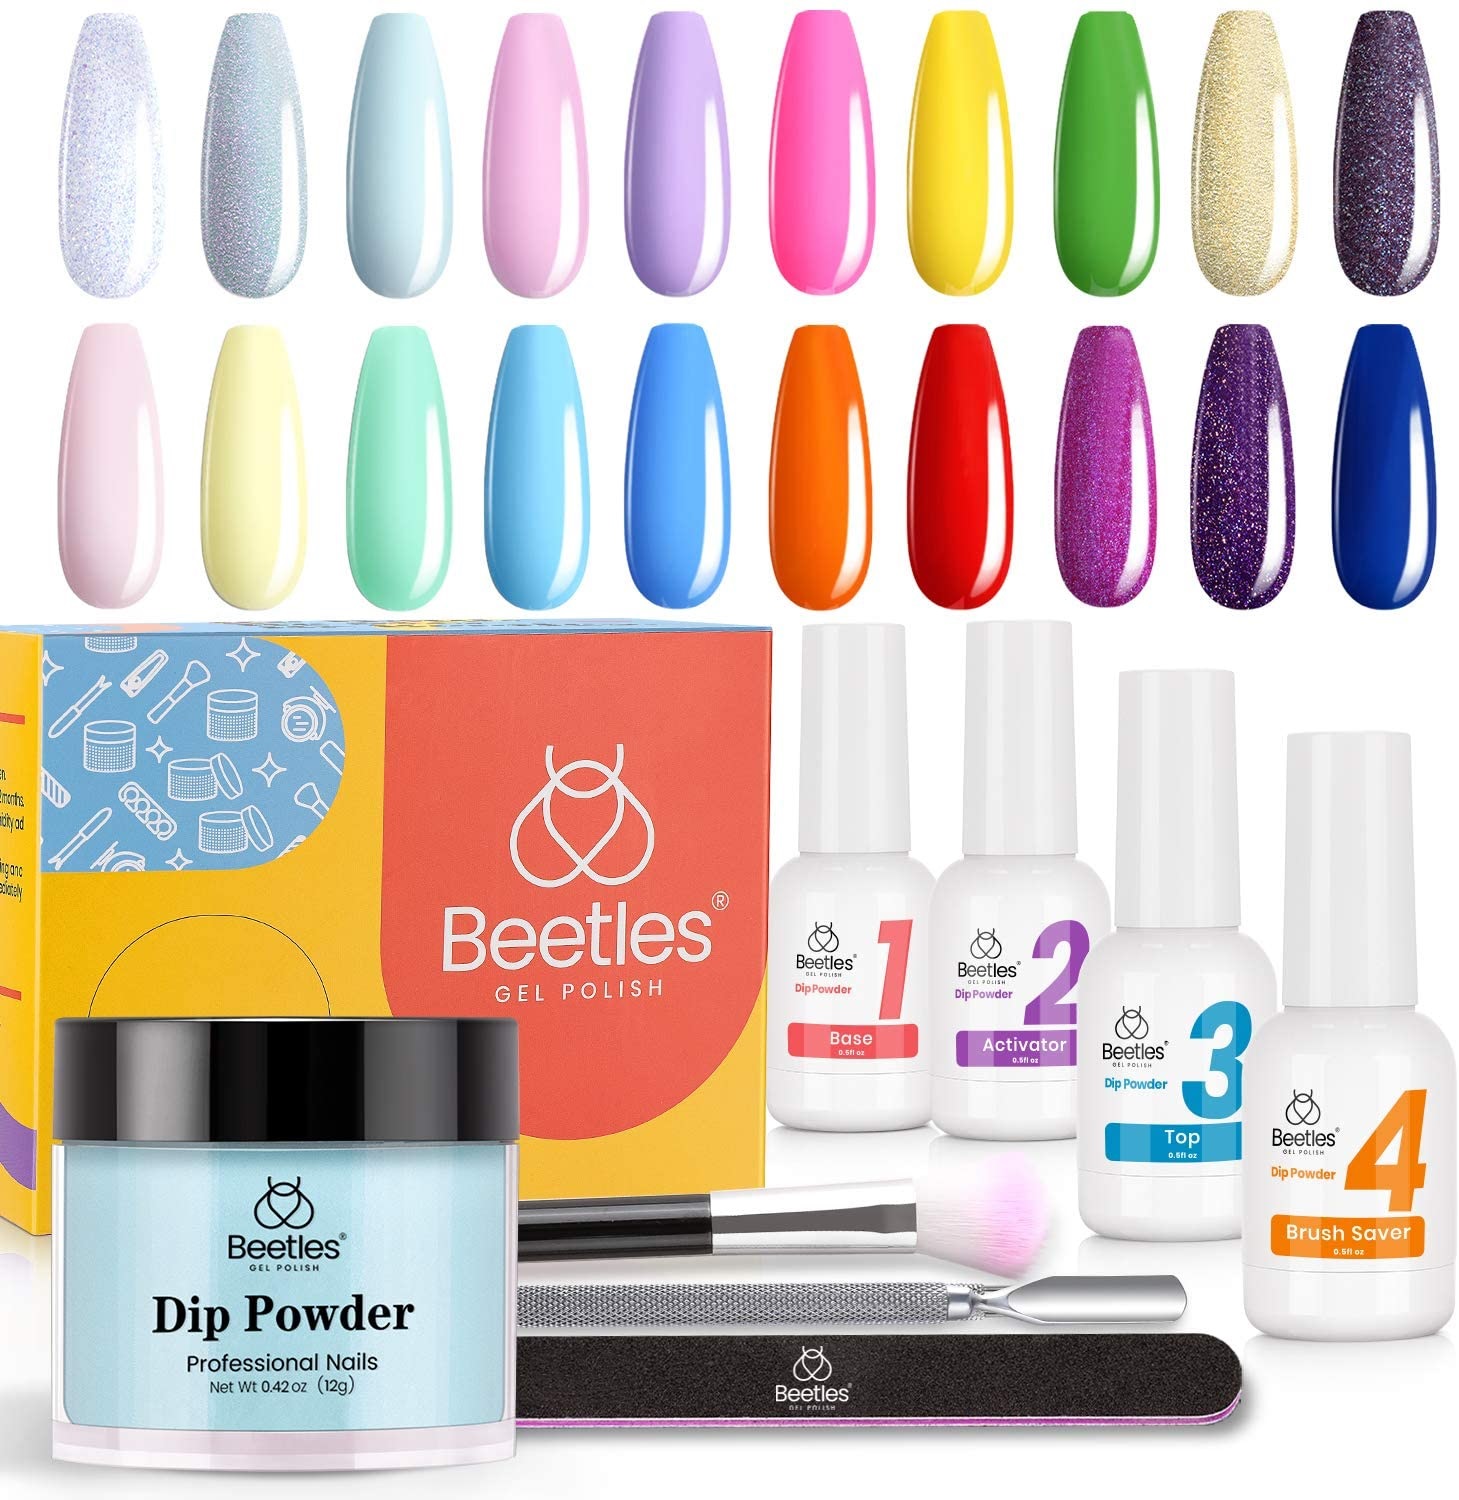 Beetles Dip Powder Nail Starter Kit Only $28.89! - Freebies2Deals